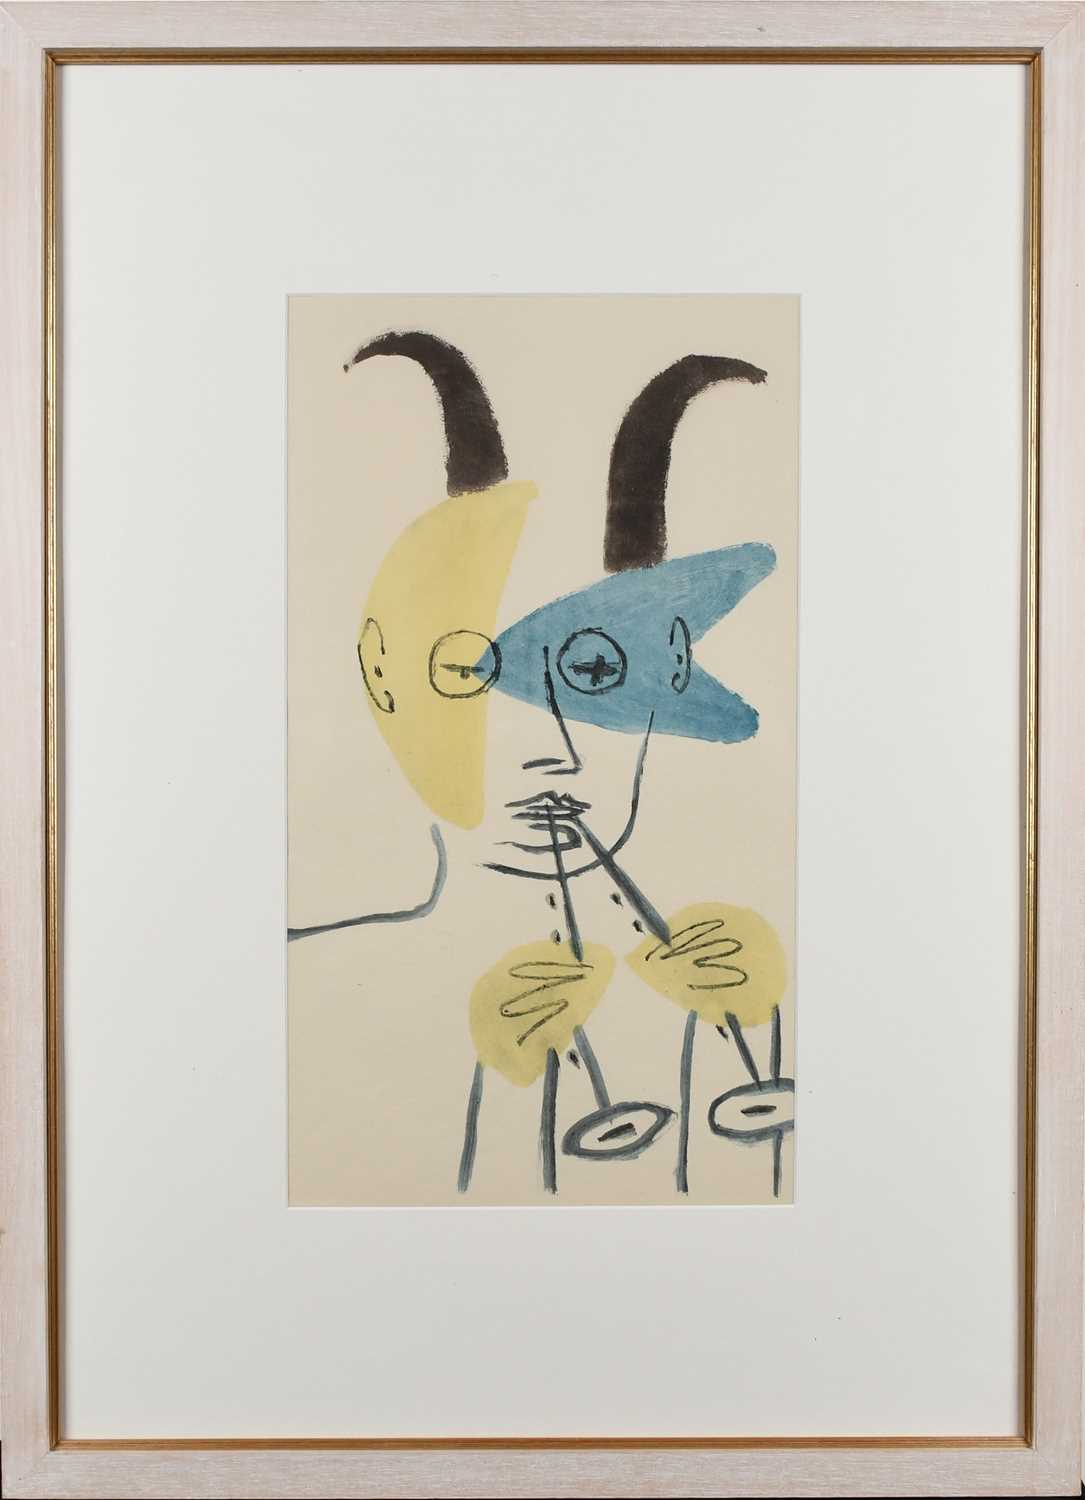 Φ After Pablo Picasso Faune à la Diaule Reproduction print 45.8 x 25.6cm Provenance: Galerie 27, - Image 2 of 4